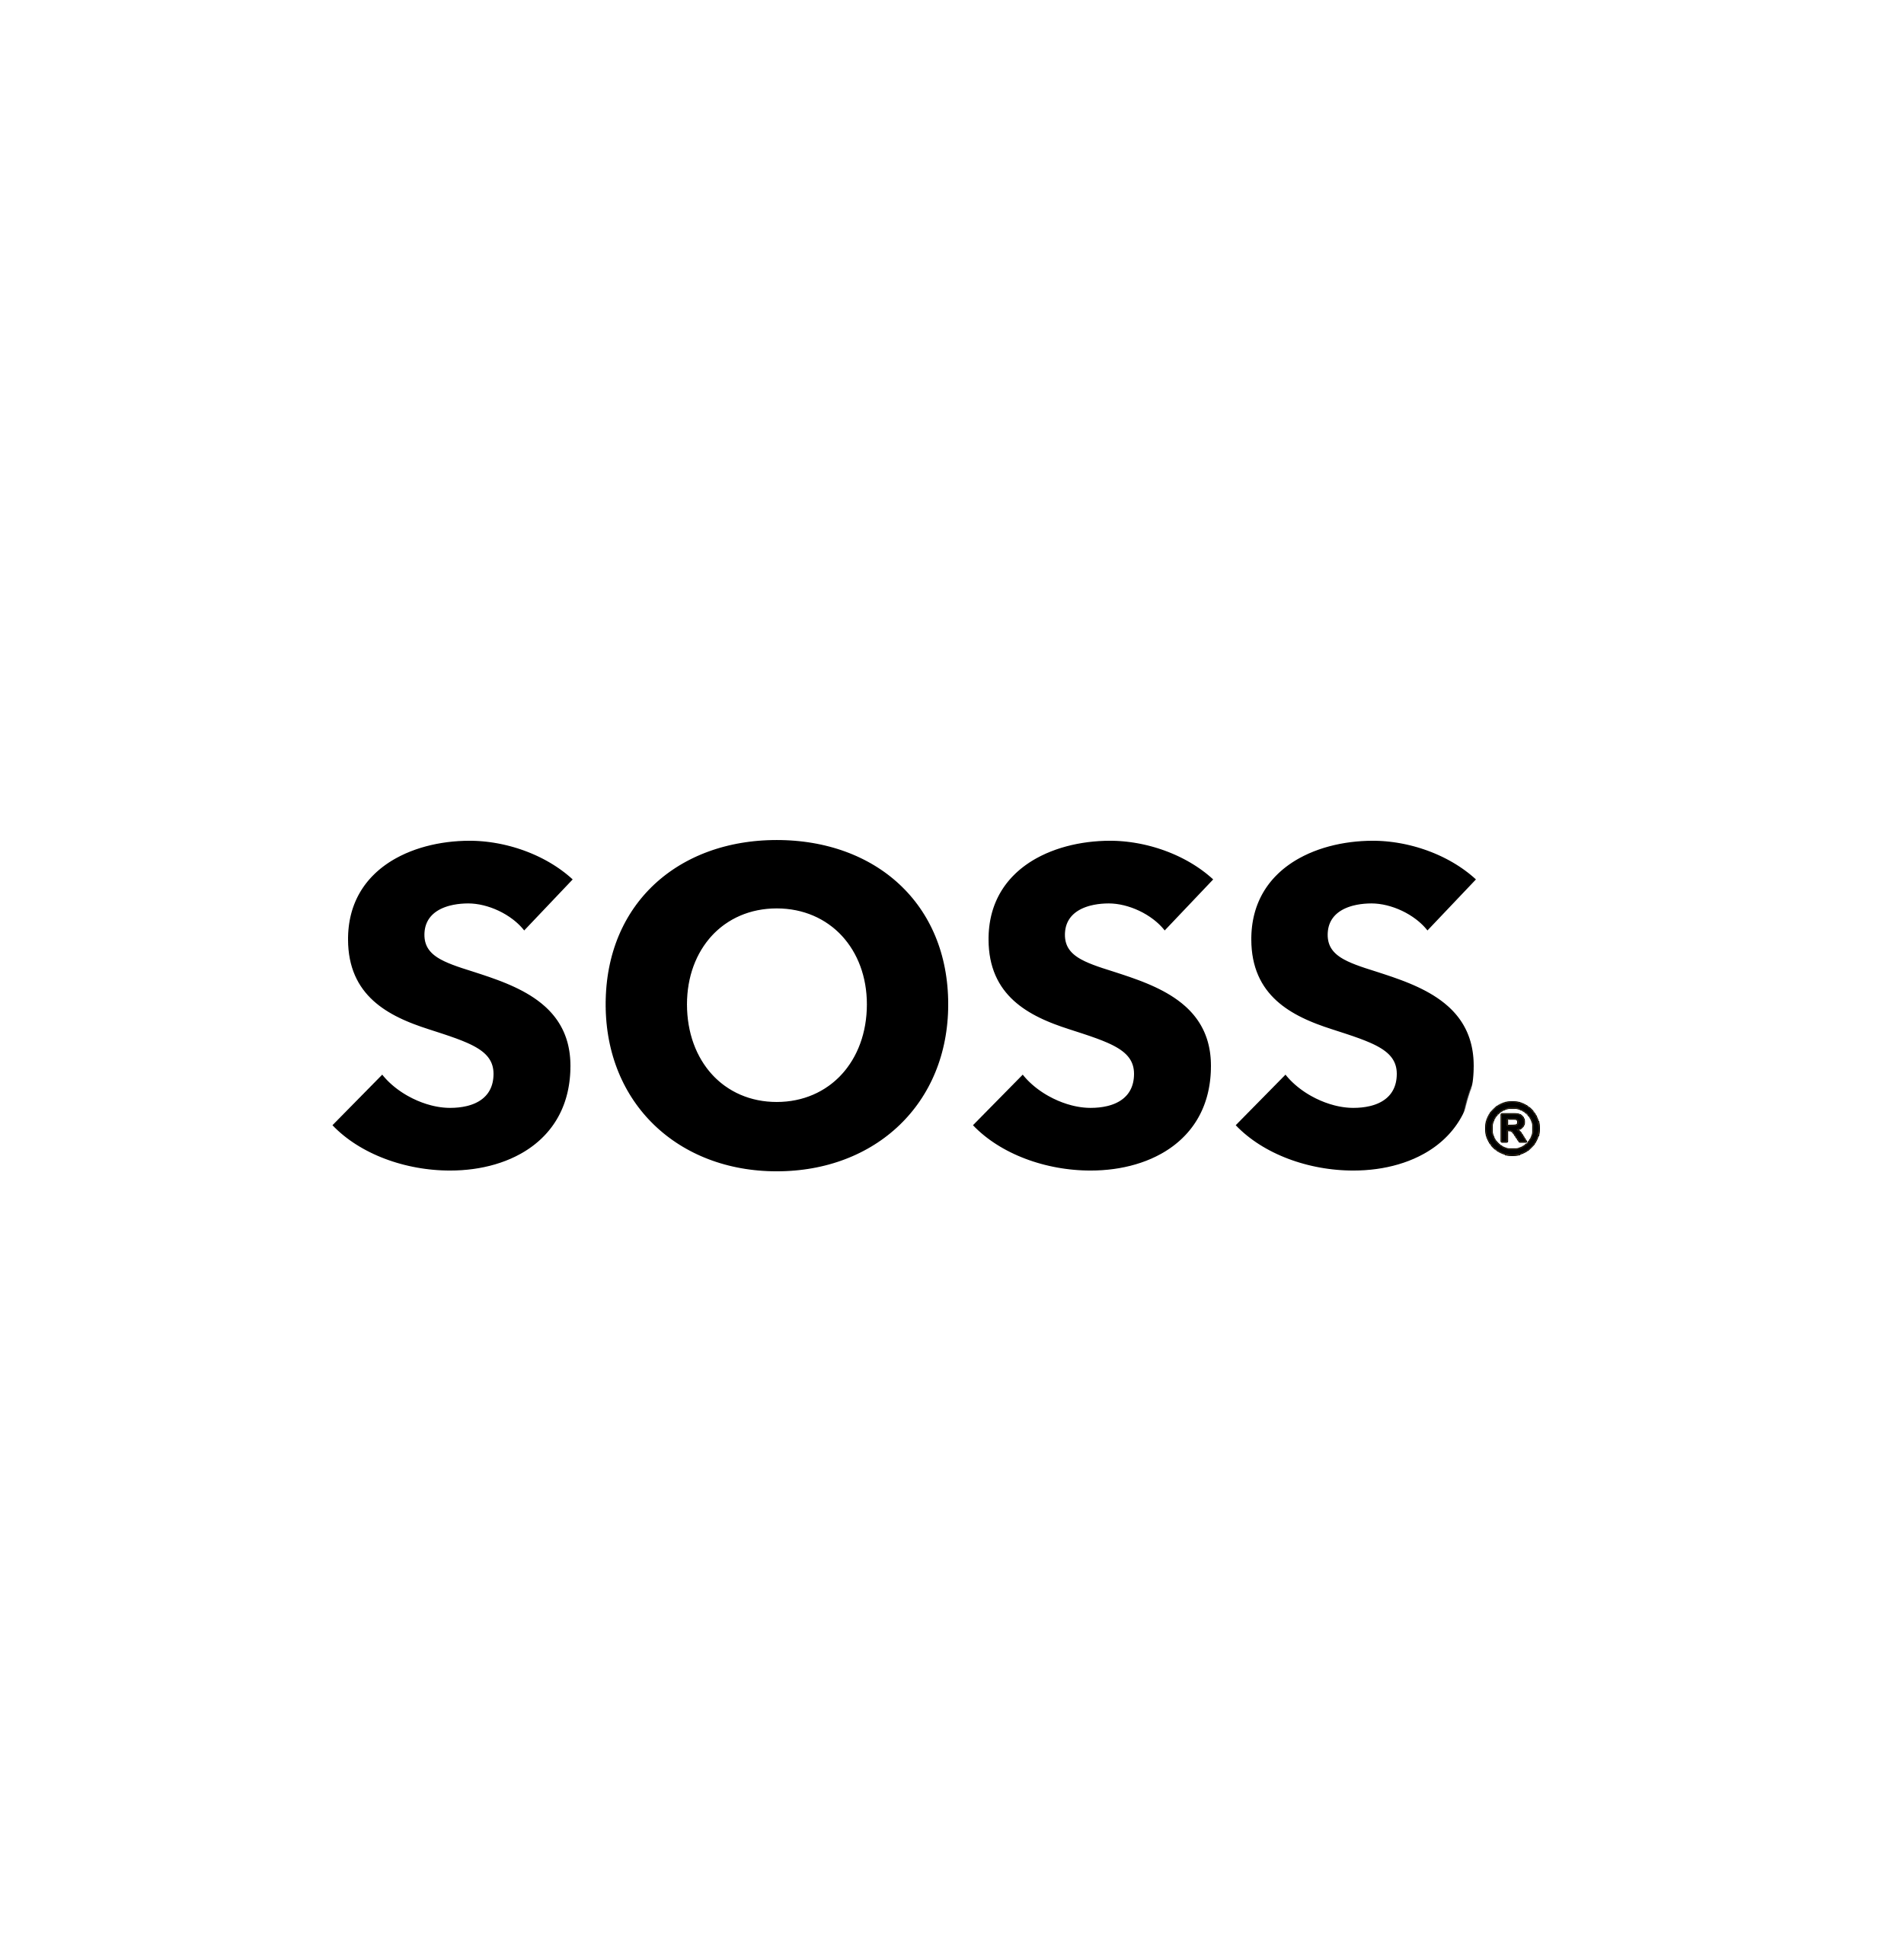 SOSS logo (black).png